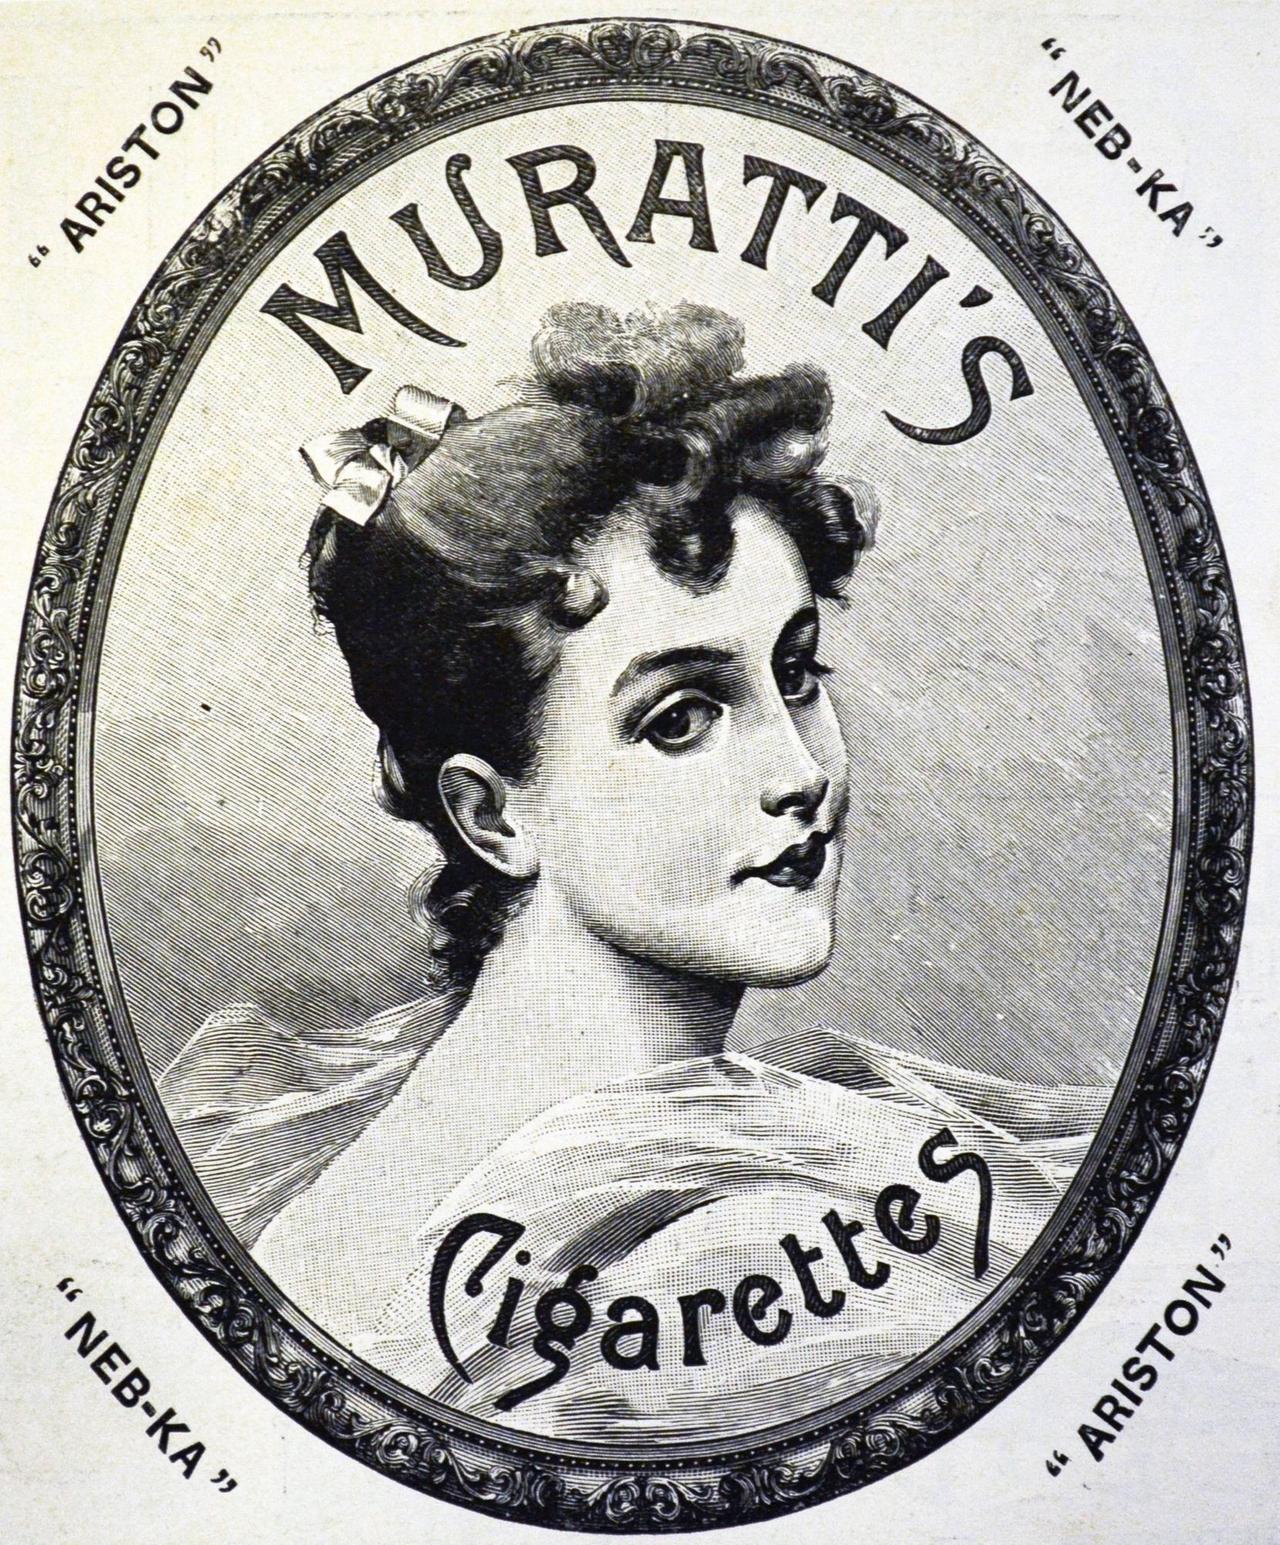 Die Zigarettenwerbung zeigt eine hübsche junge Frau in einem ovalen Bildrahmen mit der Aufschrift "Muratti's Cigarettes"